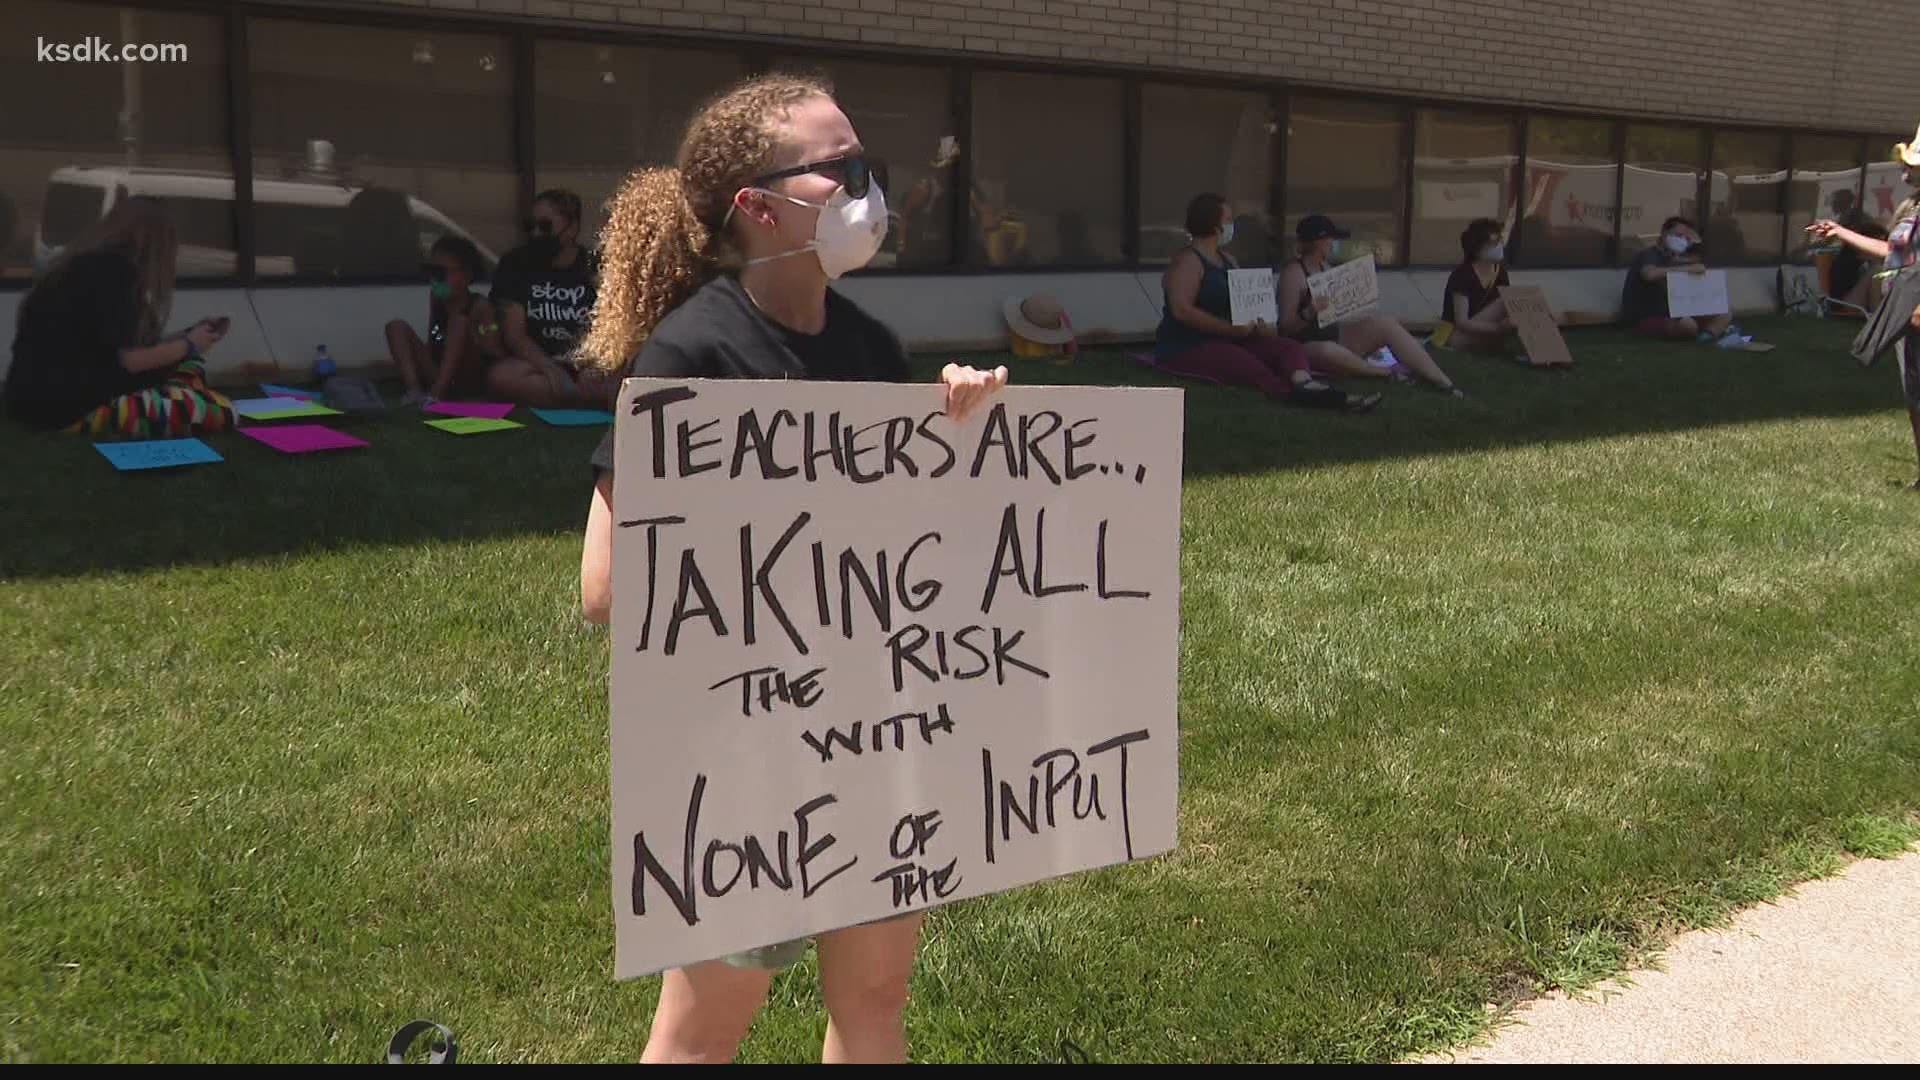 Saint Louis Public Schools teachers sit-in protest | ksdk.com